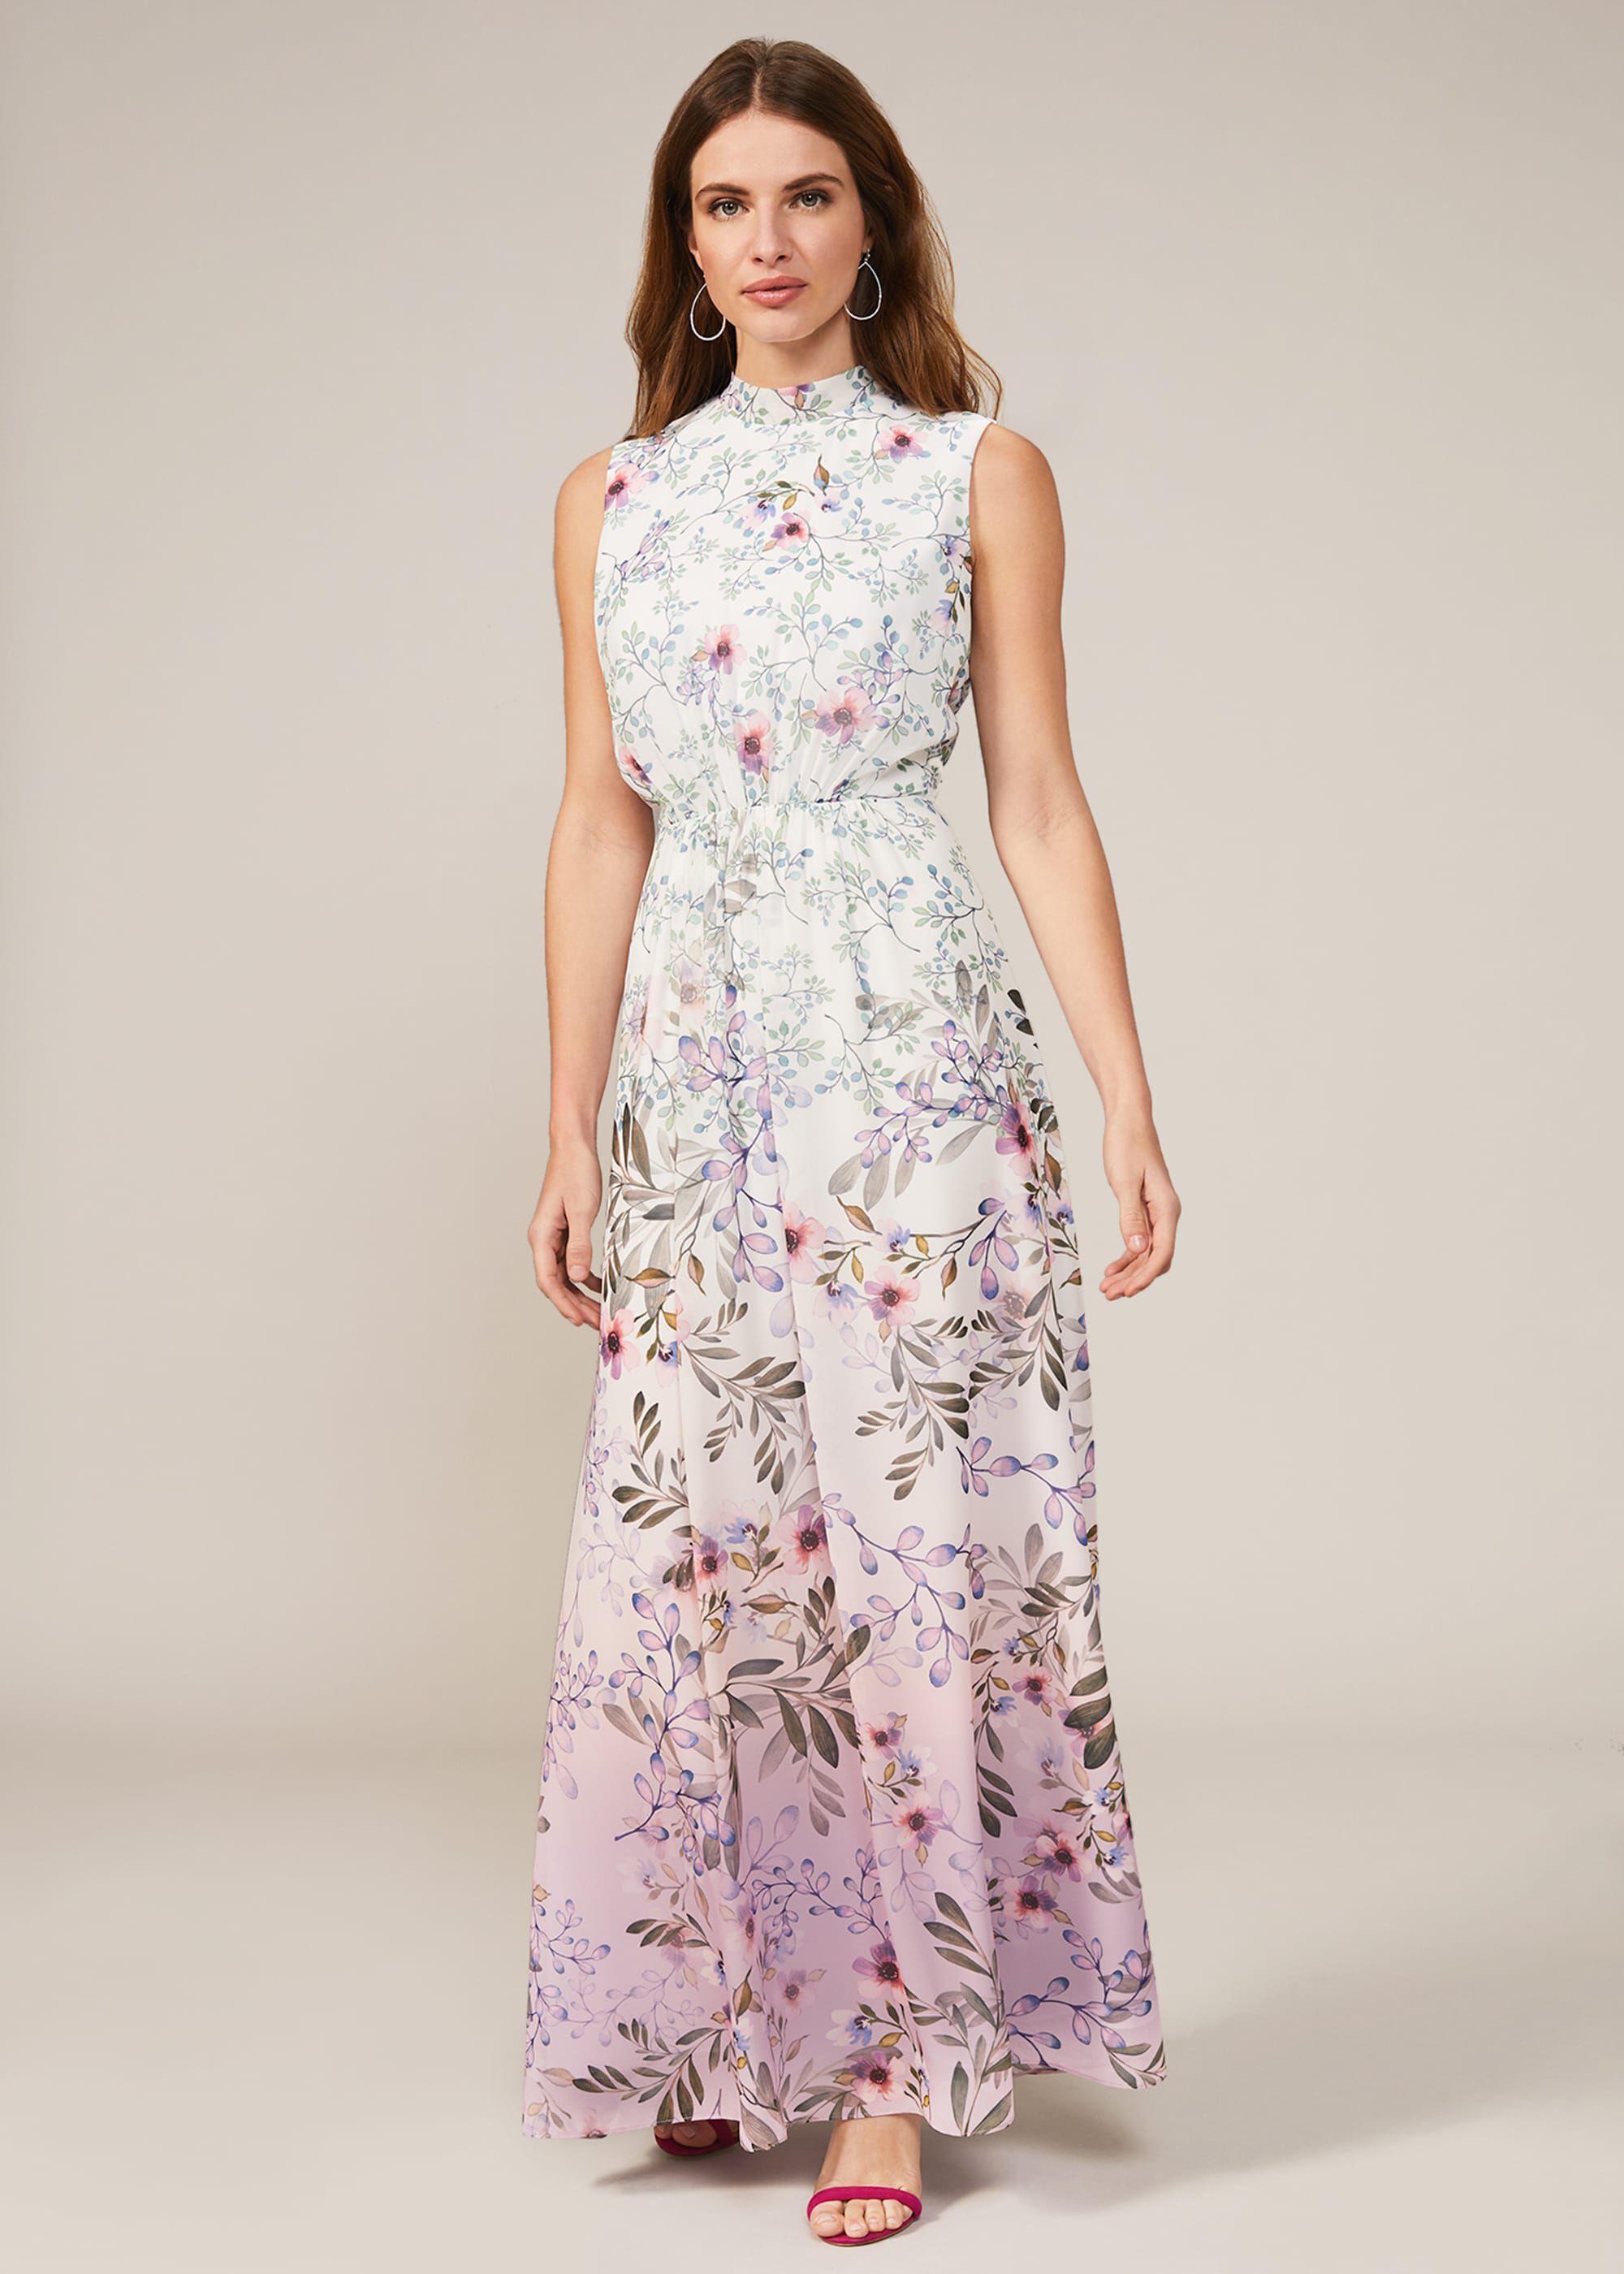 Wilhemina Floral Maxi Dress | Phase Eight